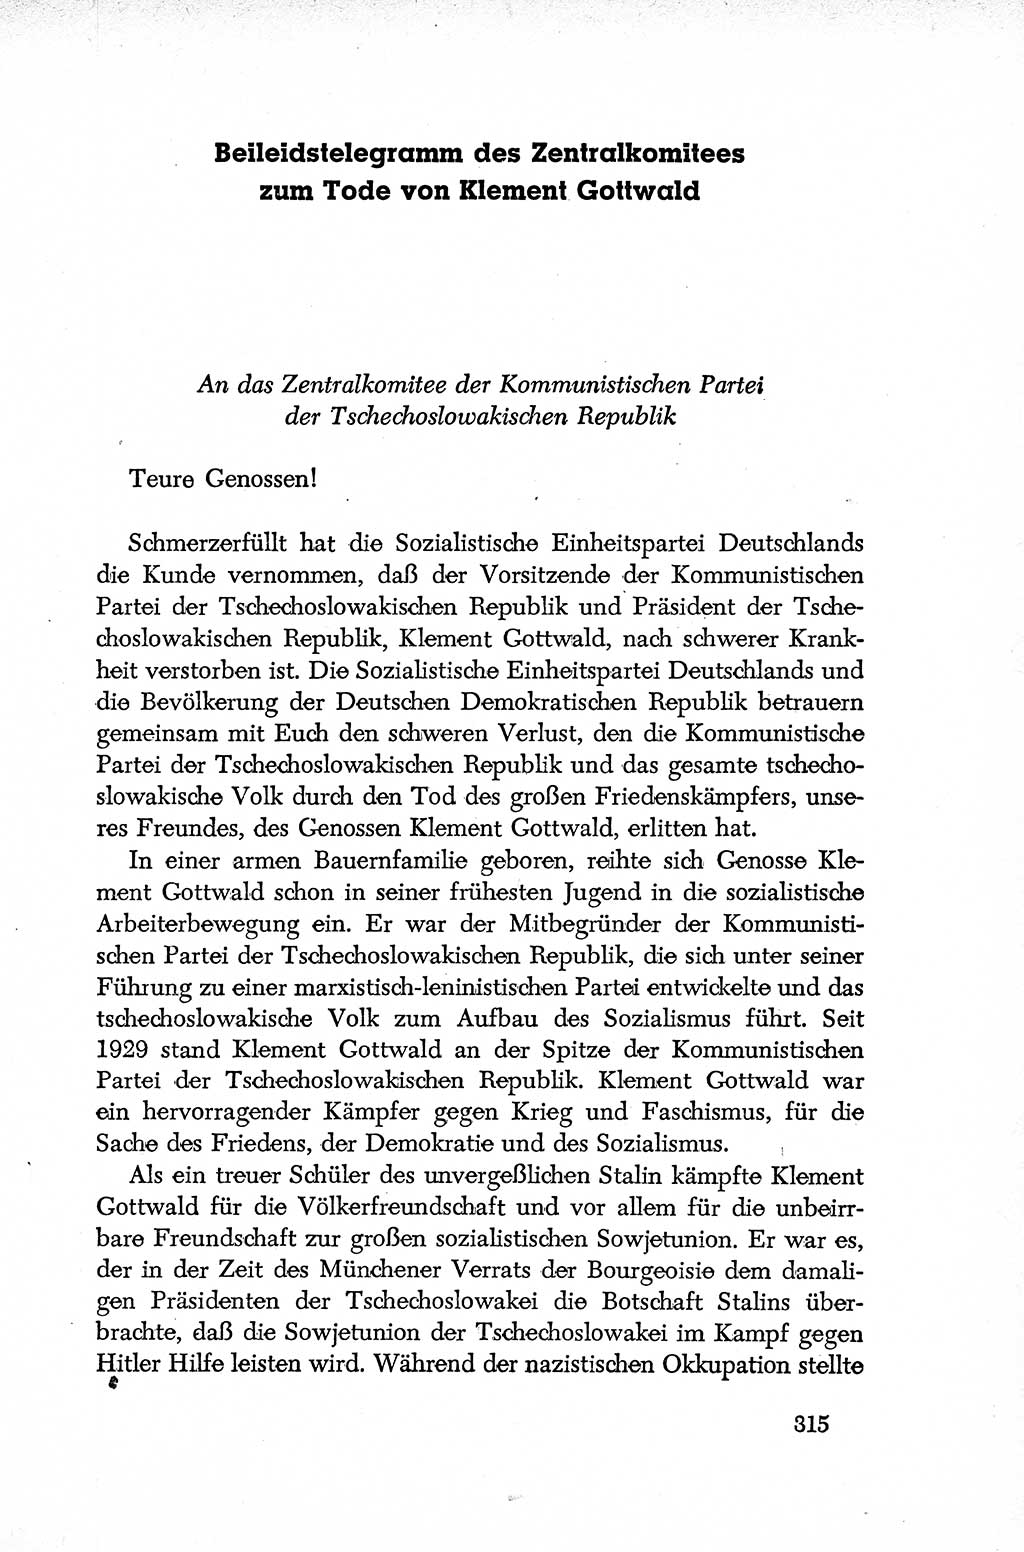 Dokumente der Sozialistischen Einheitspartei Deutschlands (SED) [Deutsche Demokratische Republik (DDR)] 1952-1953, Seite 315 (Dok. SED DDR 1952-1953, S. 315)